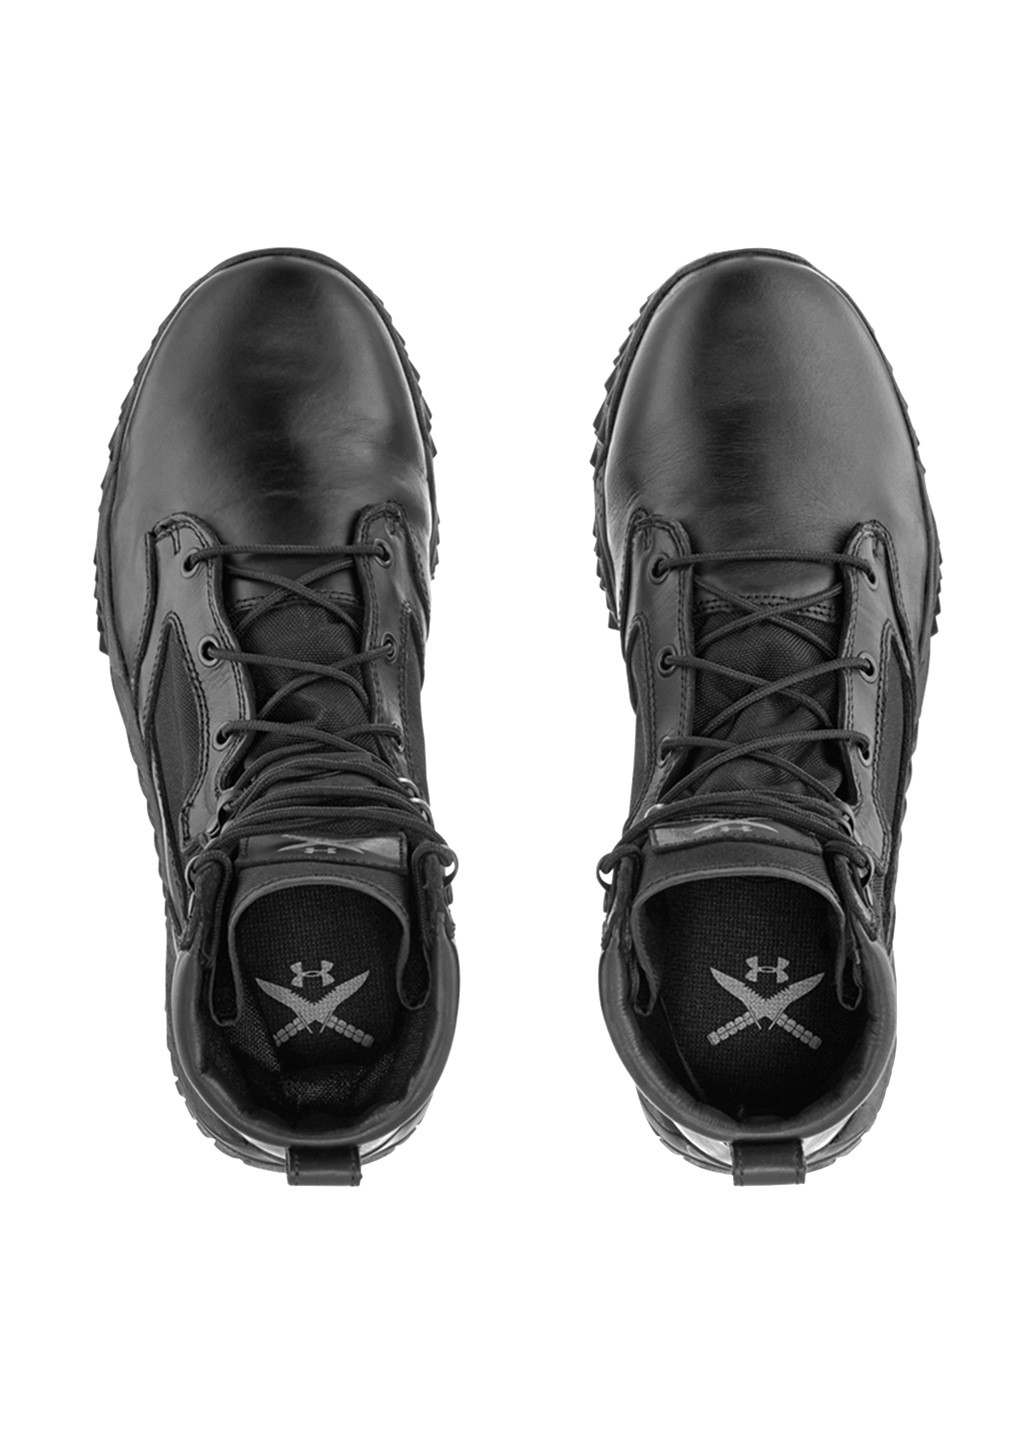 Черные зимние ботинки редвинги Under Armour